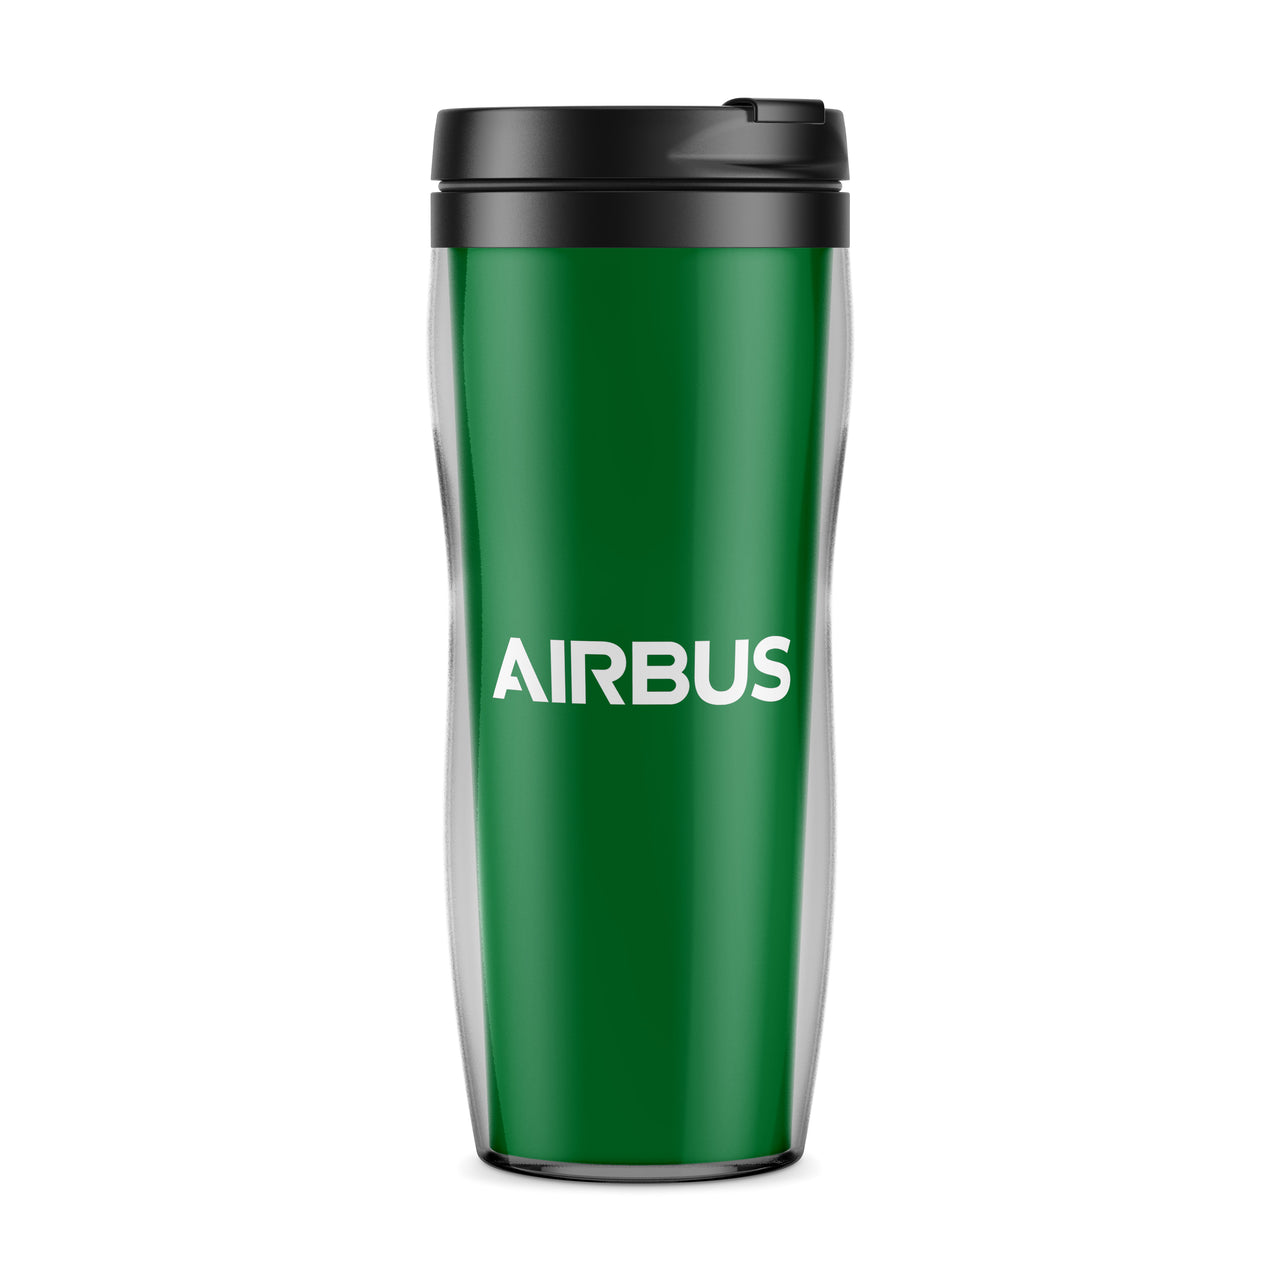 Airbus & Text Designed Travel Mugs